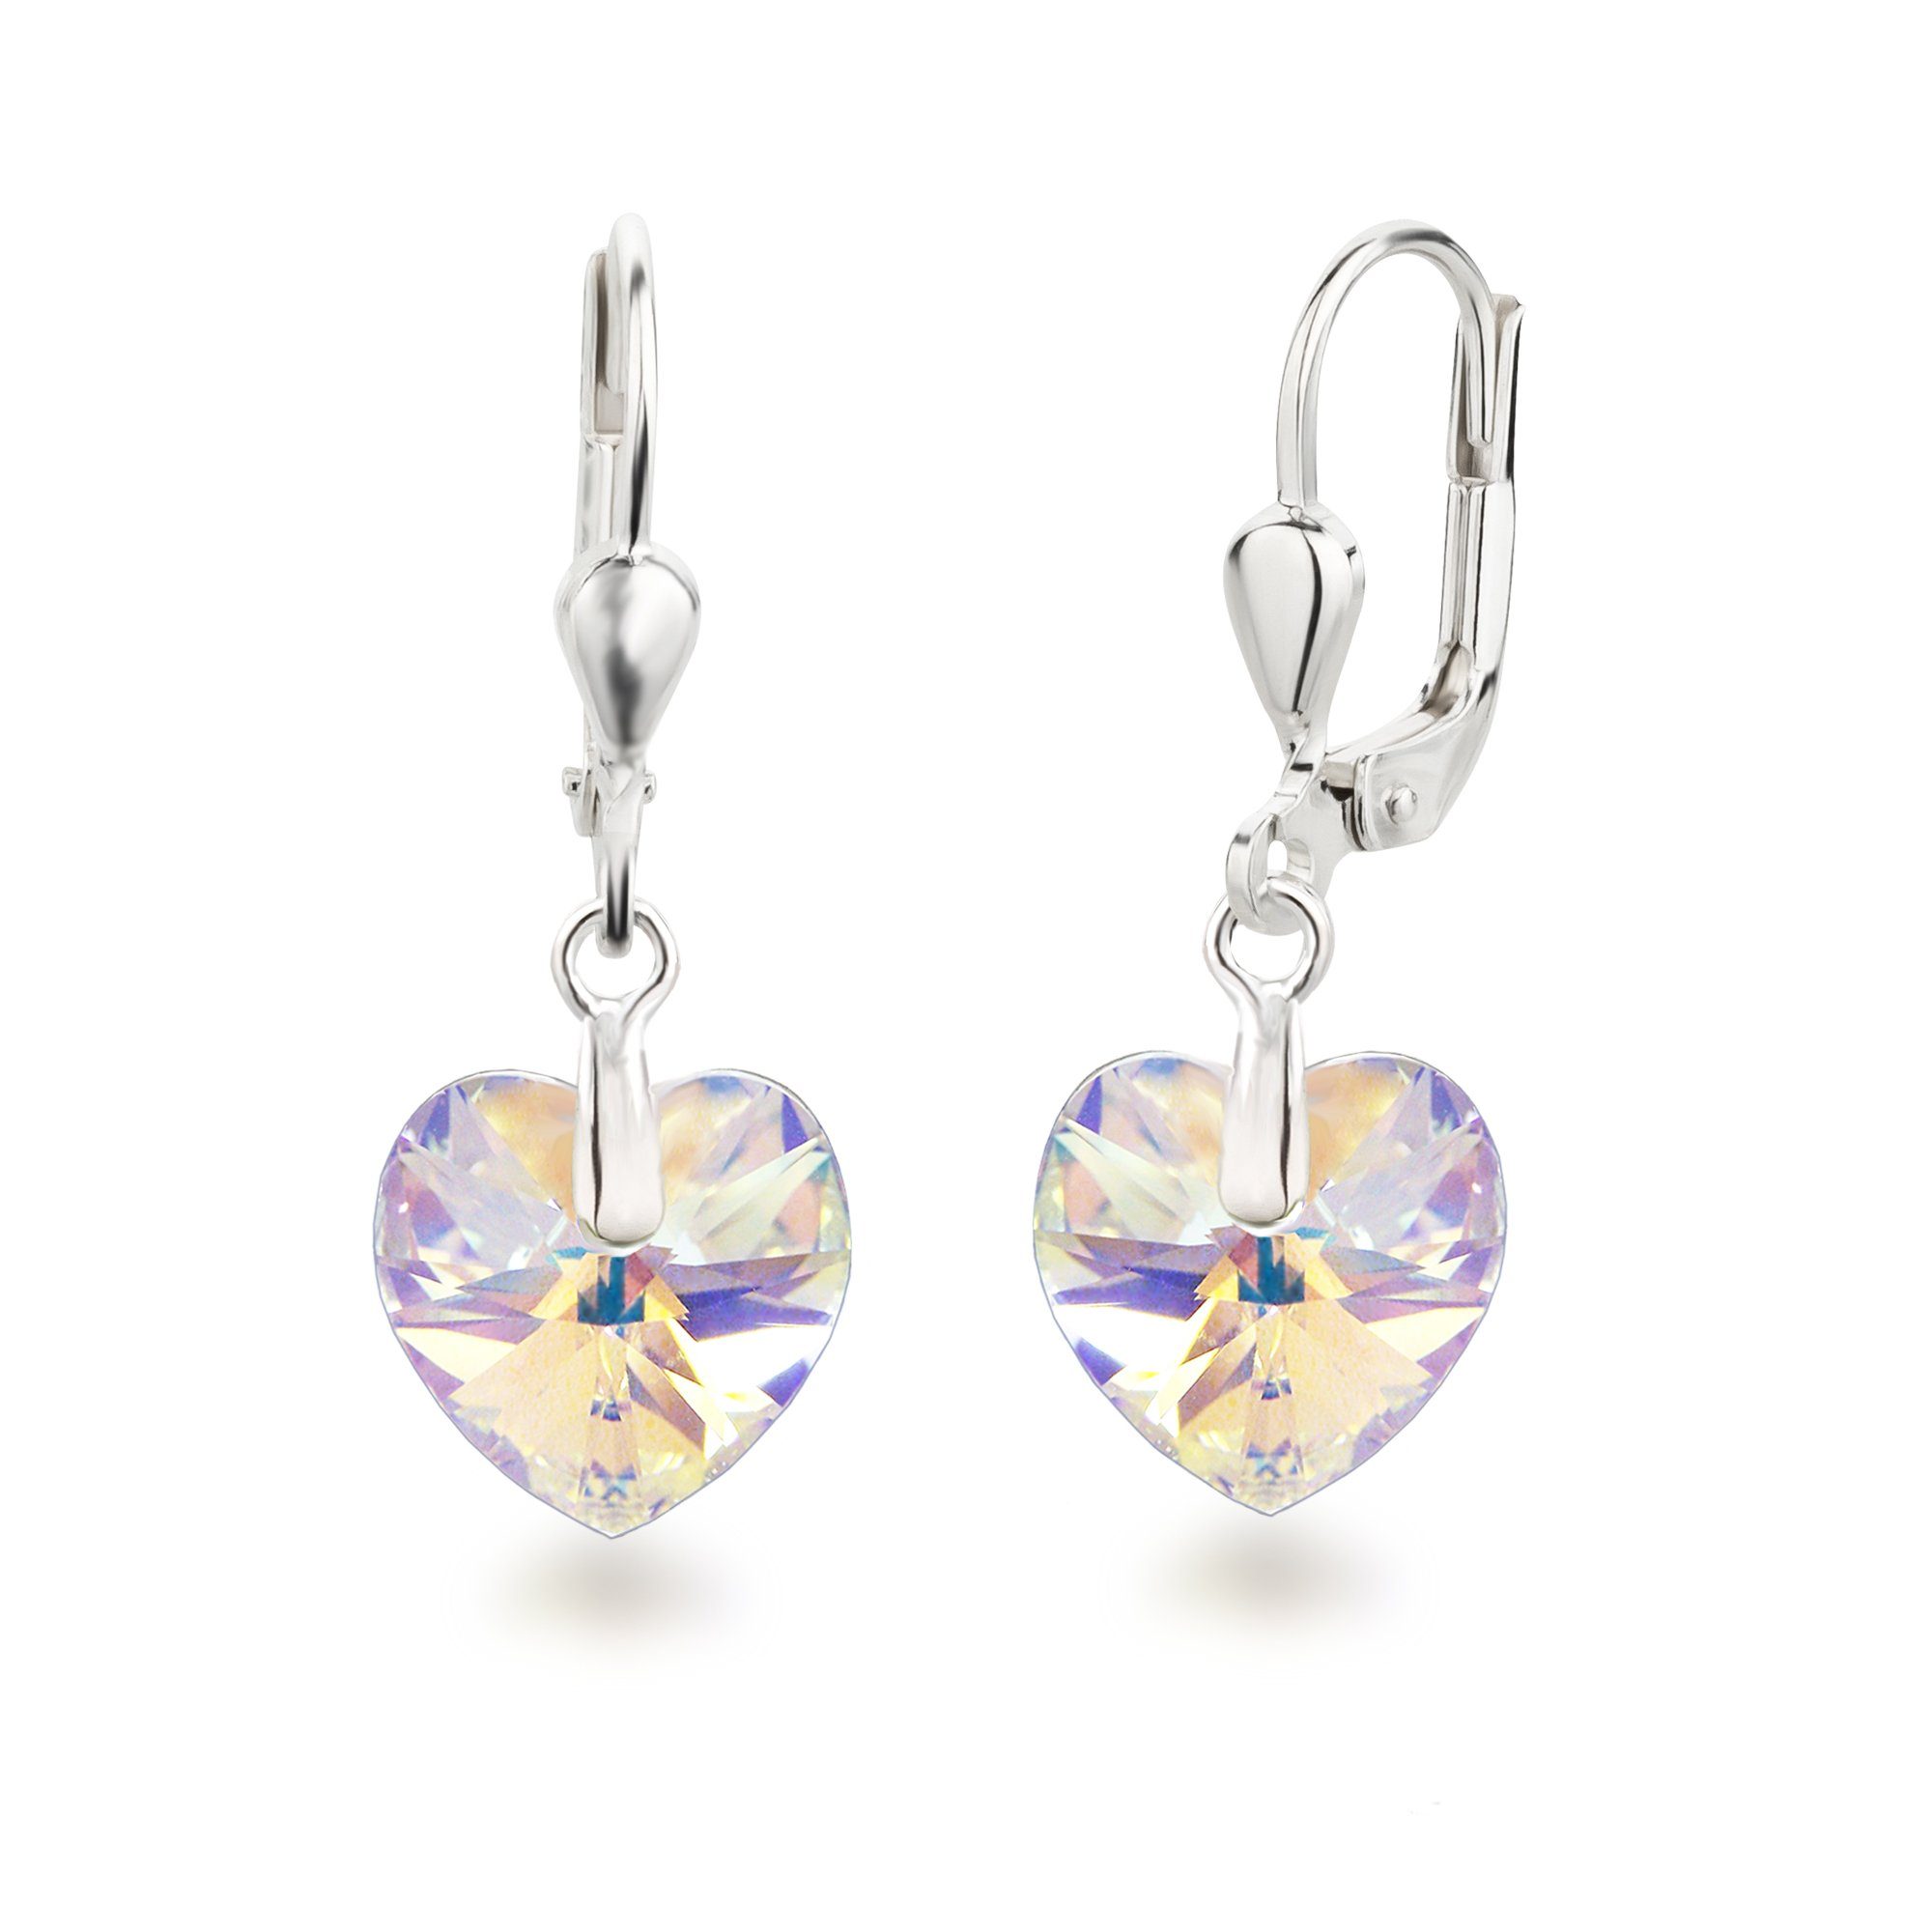 Schöner-SD Paar Ohrhänger Ohrringe hängend mit Herz Kristall 10mm für Damen und Mädchen, 925 Silber Crystal Aurora Boreale